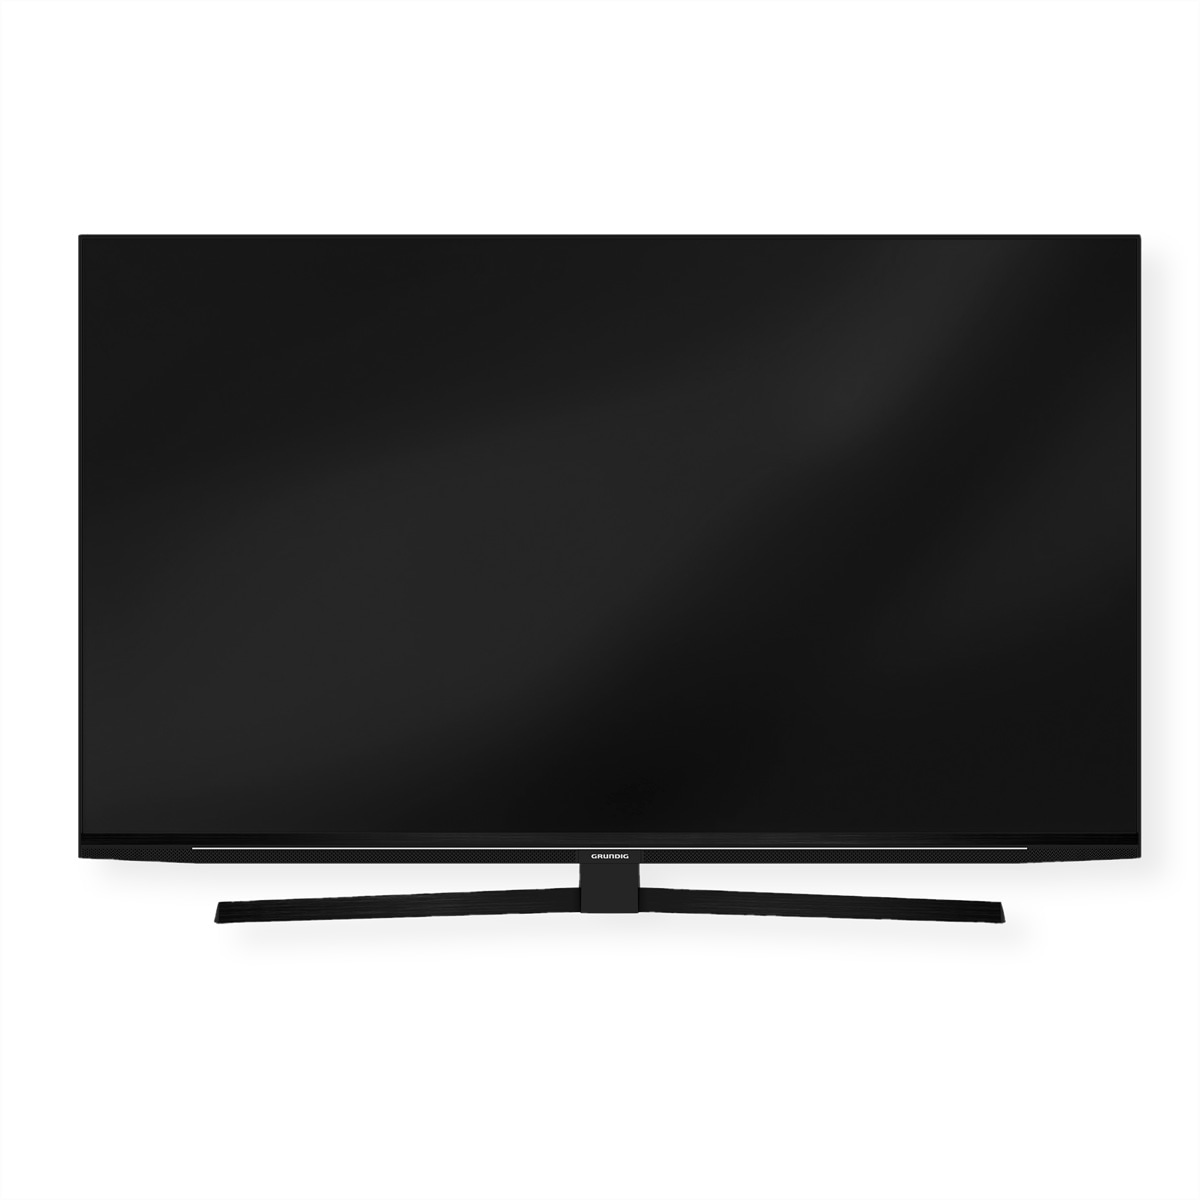 UHD TV »Grundig TV 55 GUB 8250, 55", UHD«, 140 cm/55 Zoll, UHD